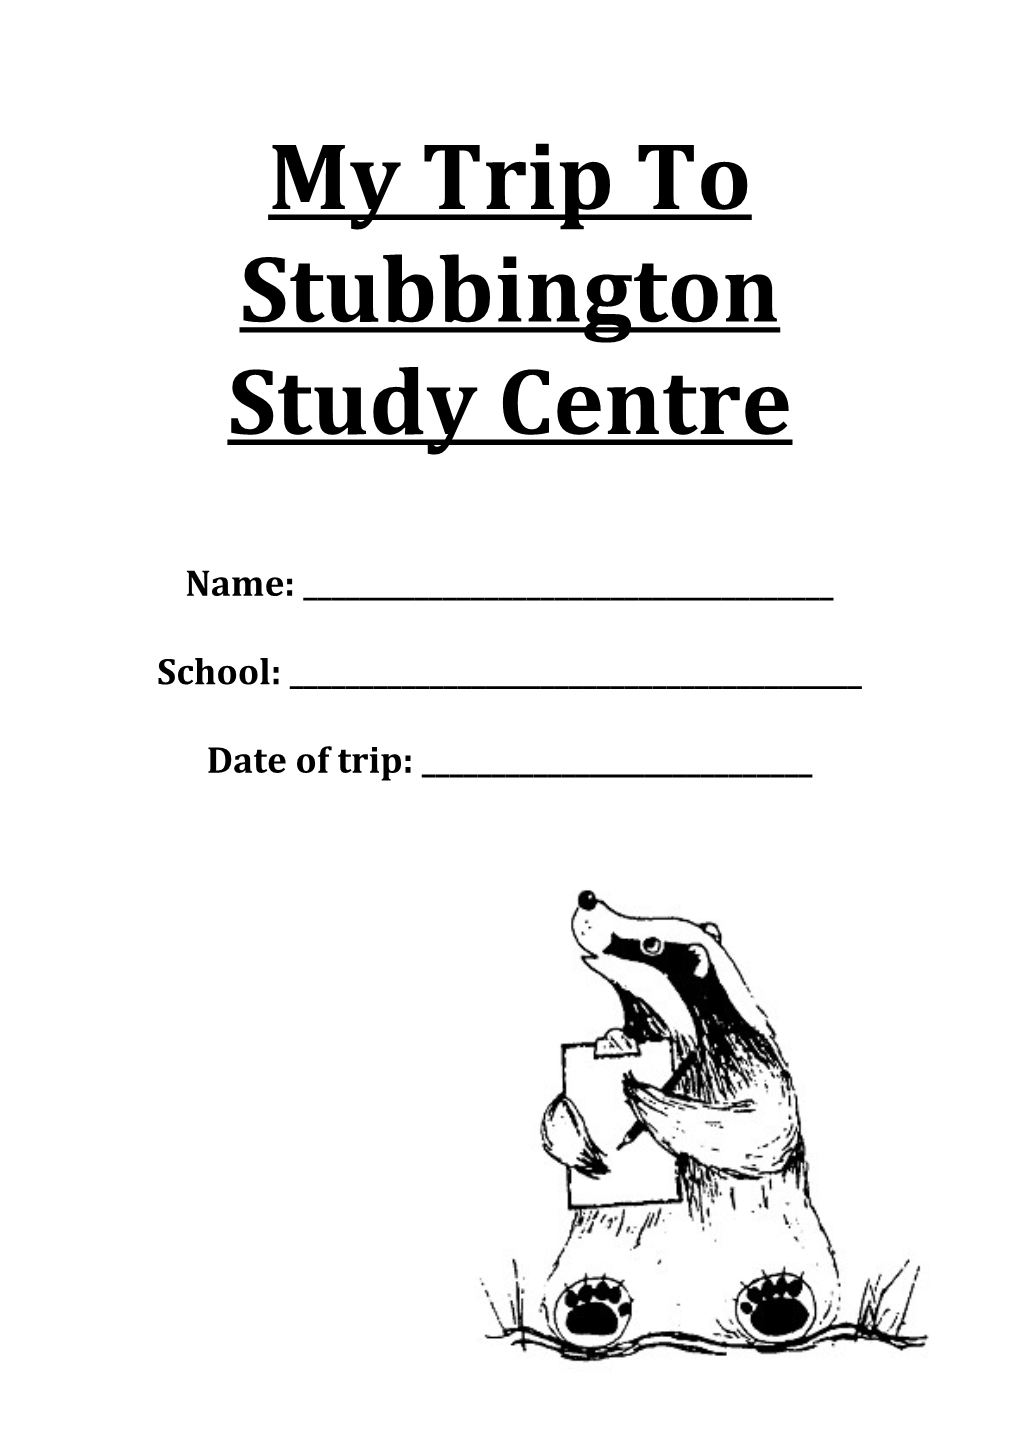 My Trip to Stubbington